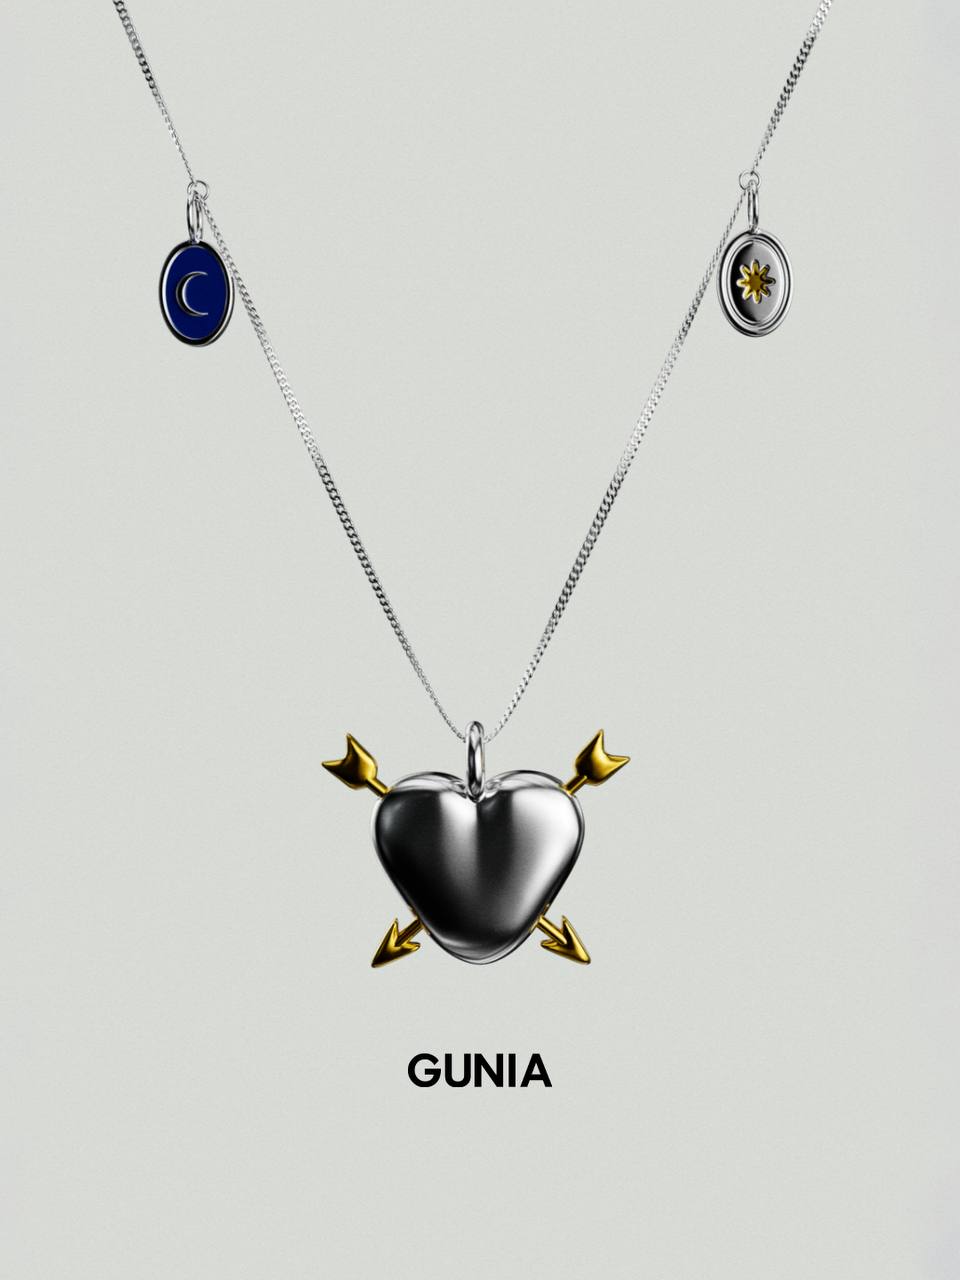 Цепочка с подвеской – новое украшение от GUNIA Project до Дня Независимости